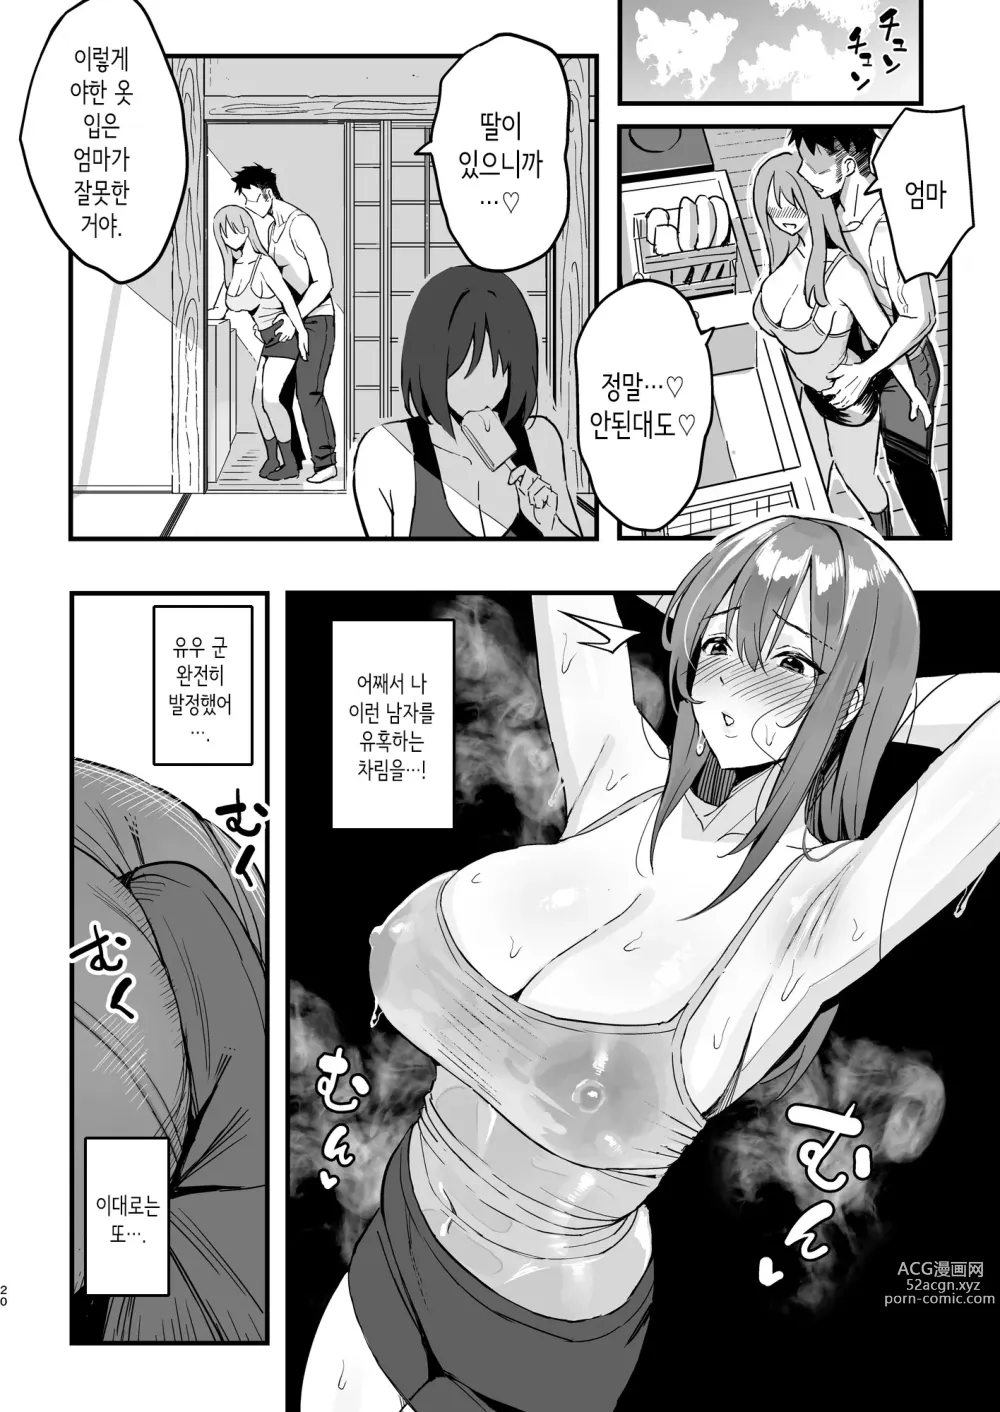 Page 19 of doujinshi 여친의 엄마는 마마카츠 엄마였다.